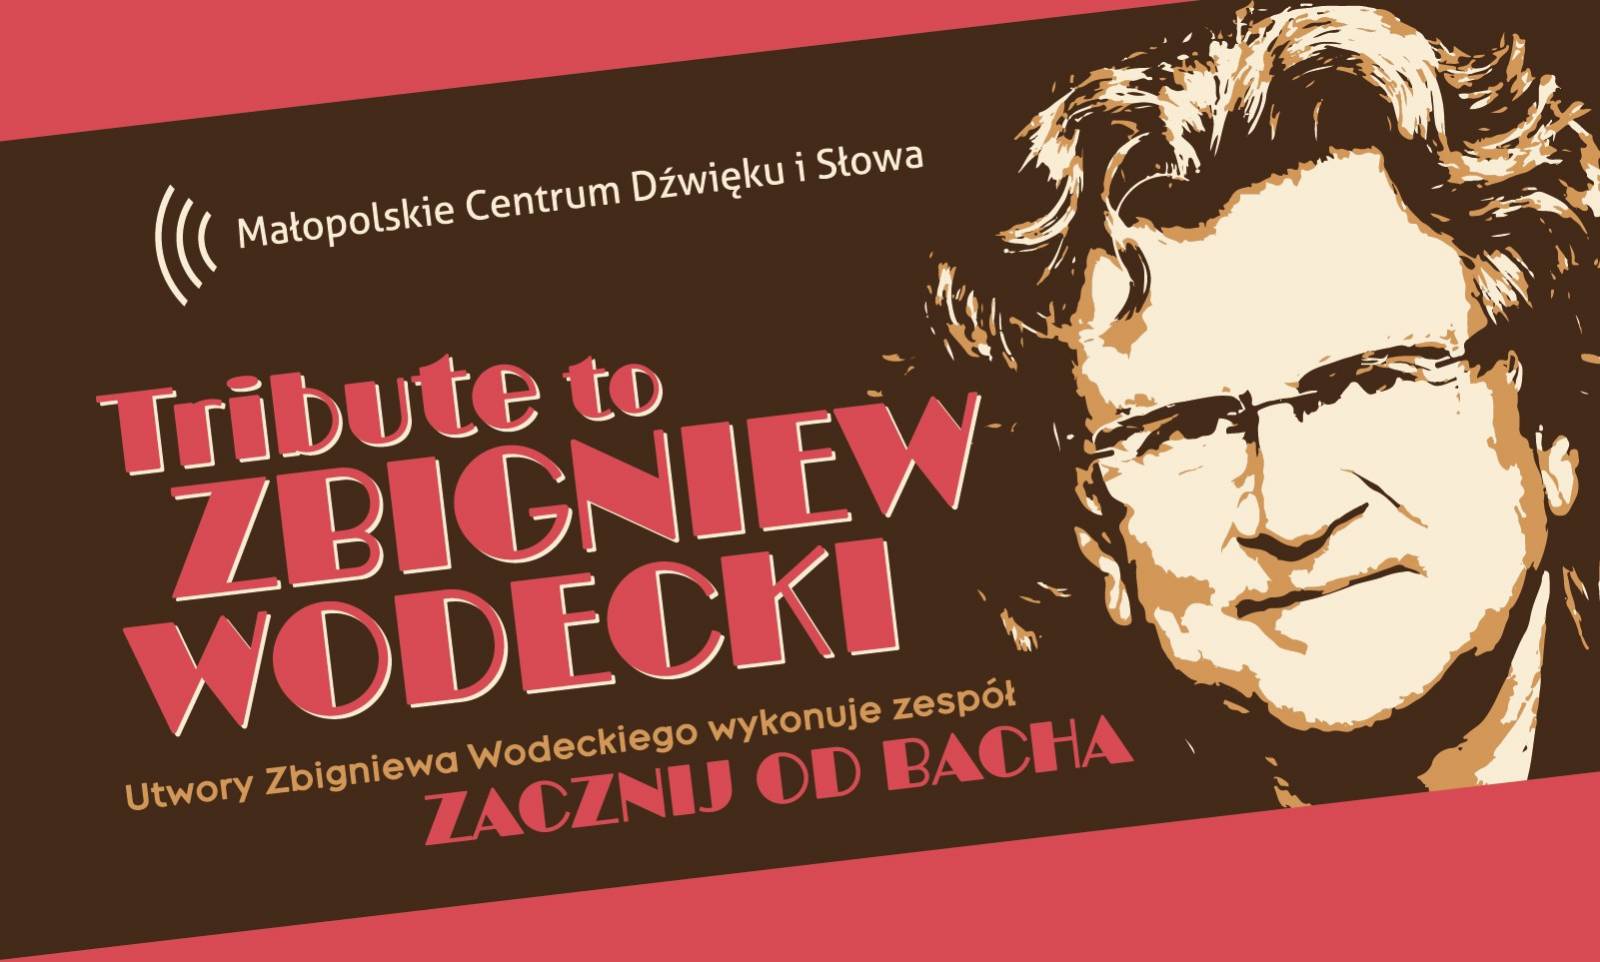 Tribute to Zbigniew Wodecki. Zacznij od Bacha